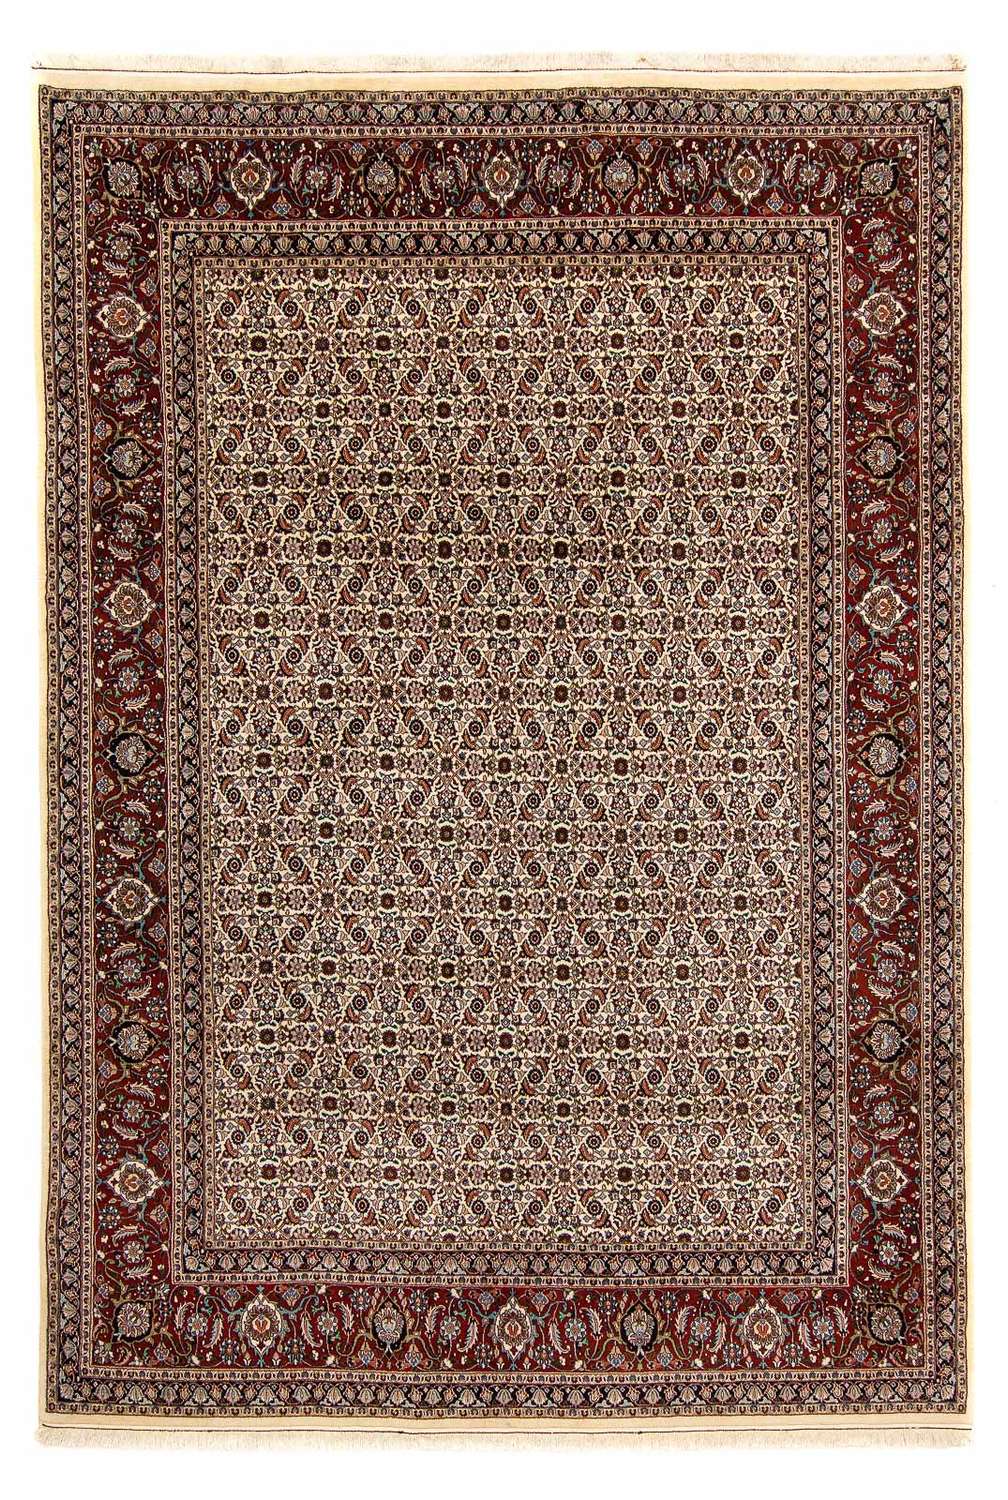 Tapis persan - Classique - 337 x 248 cm - beige